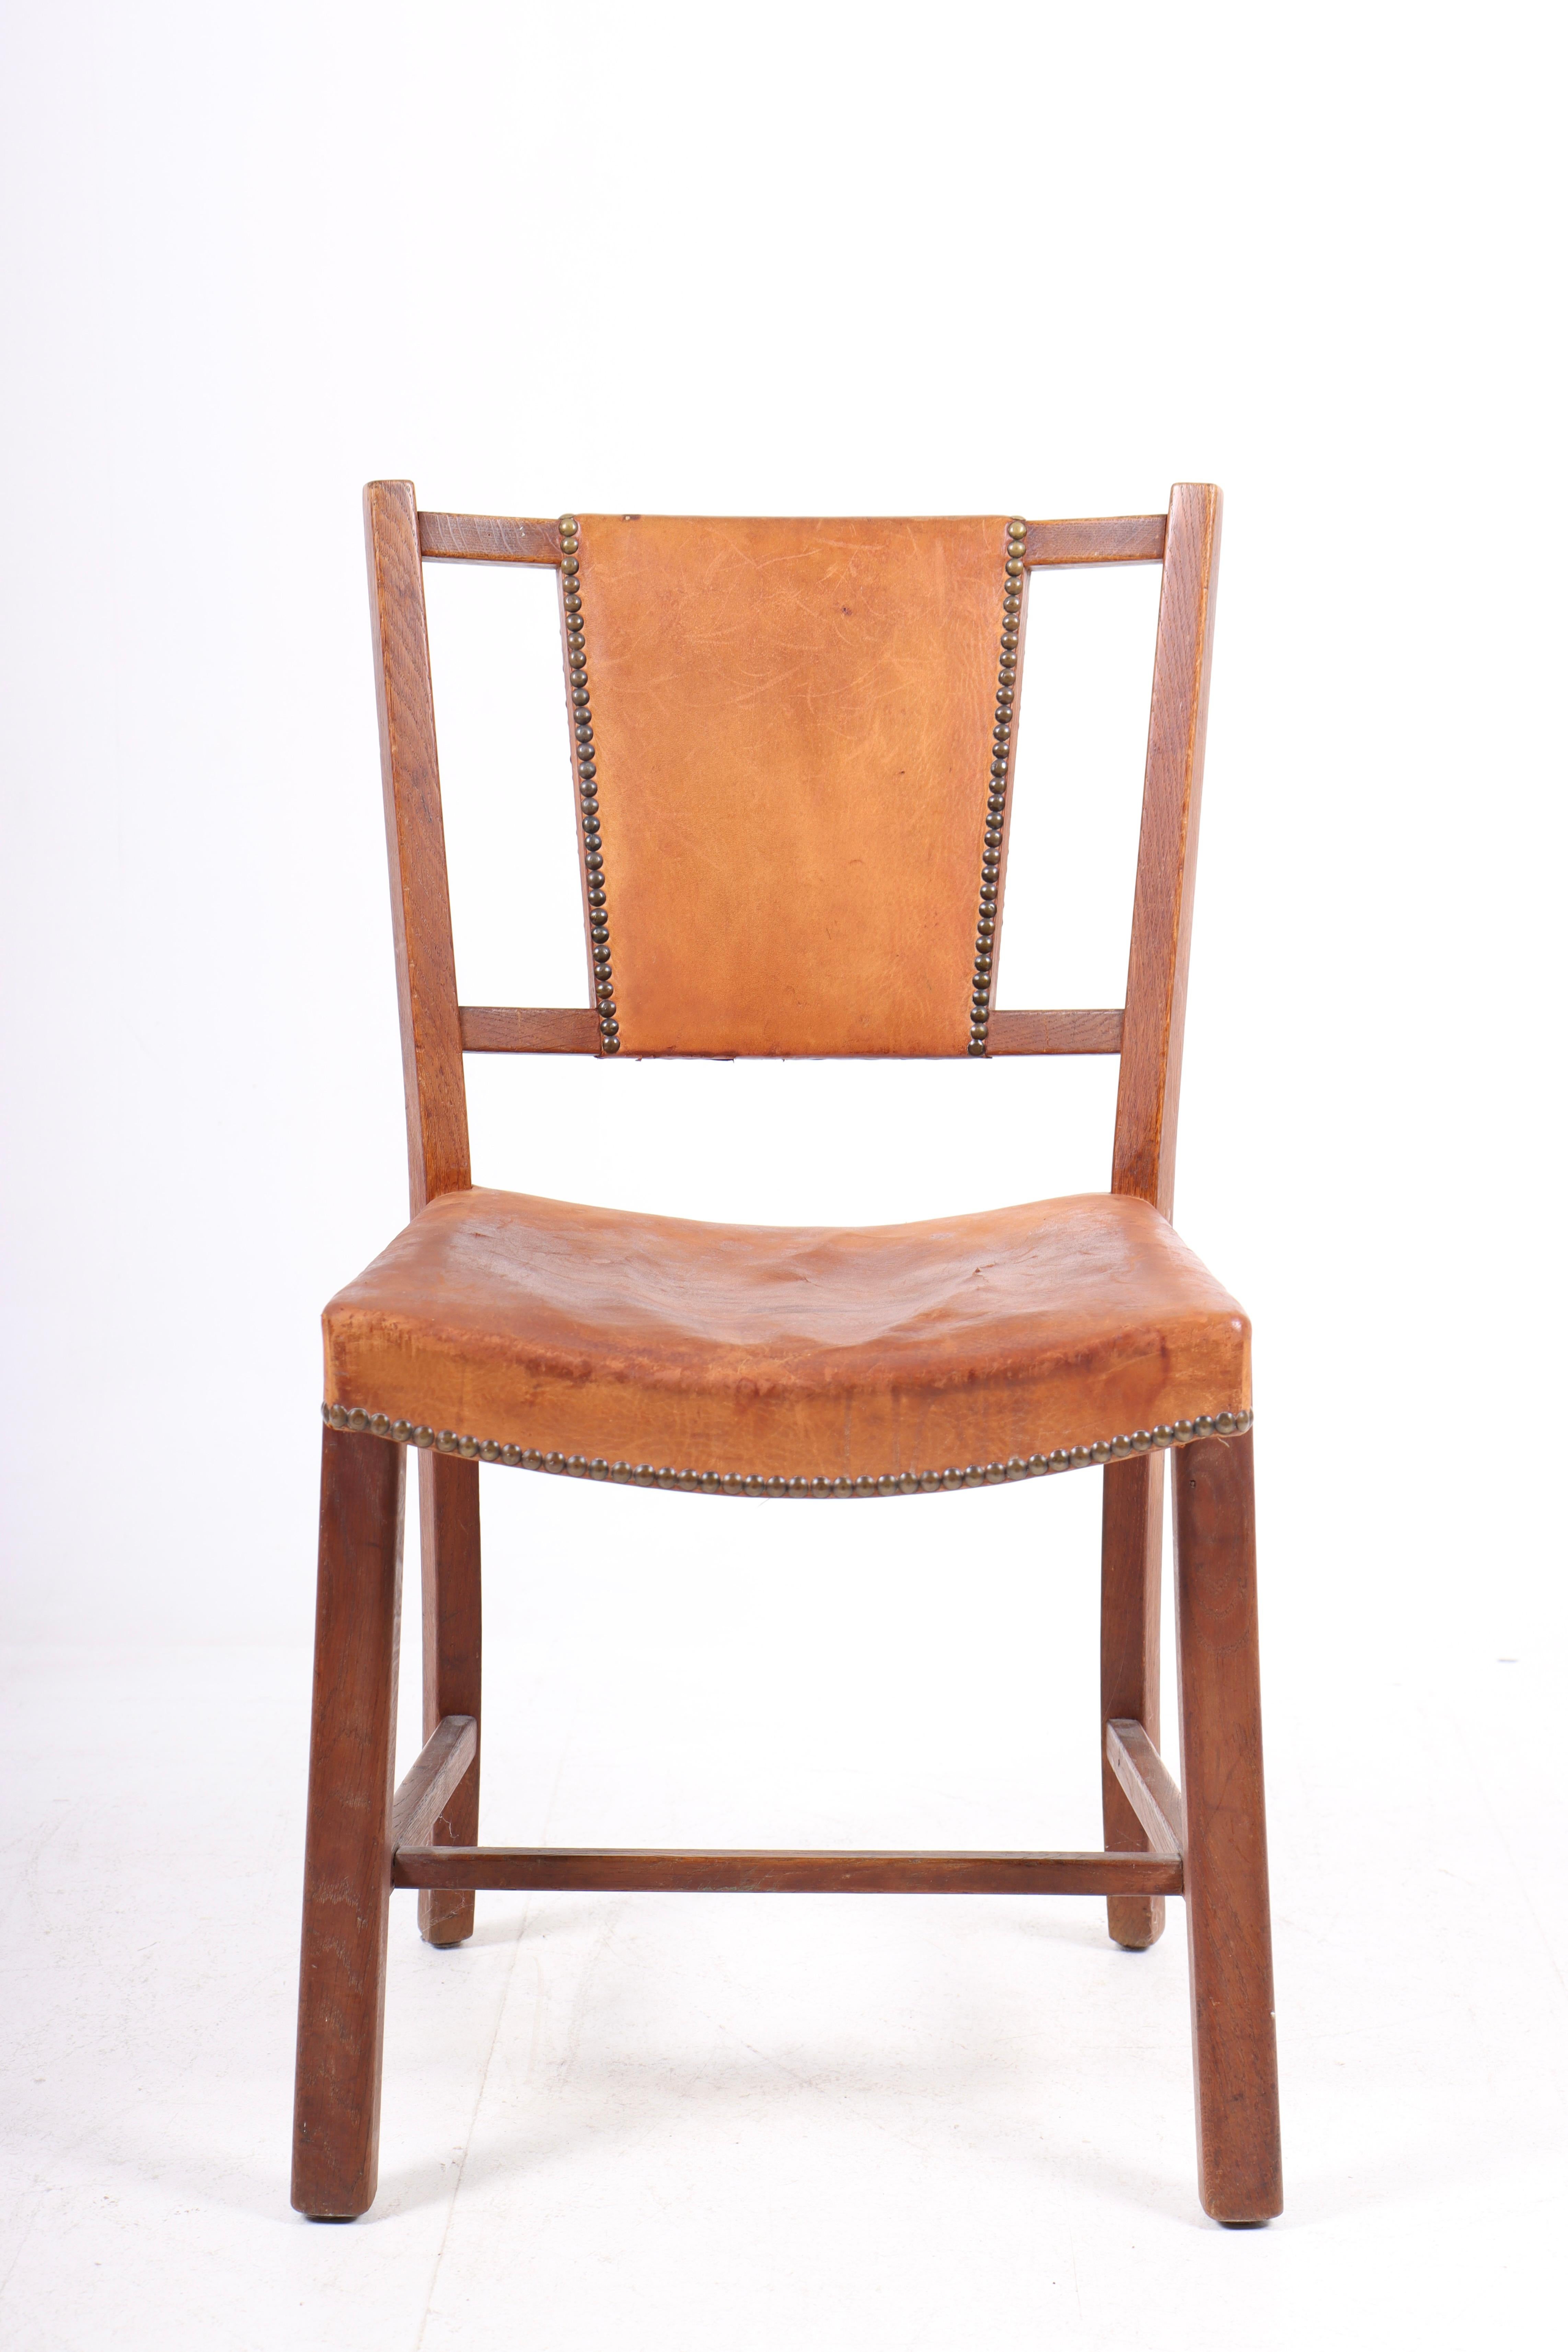 Chaise d'appoint danoise en cuir patiné et chêne. Conçu et fabriqué au Danemark, état original.